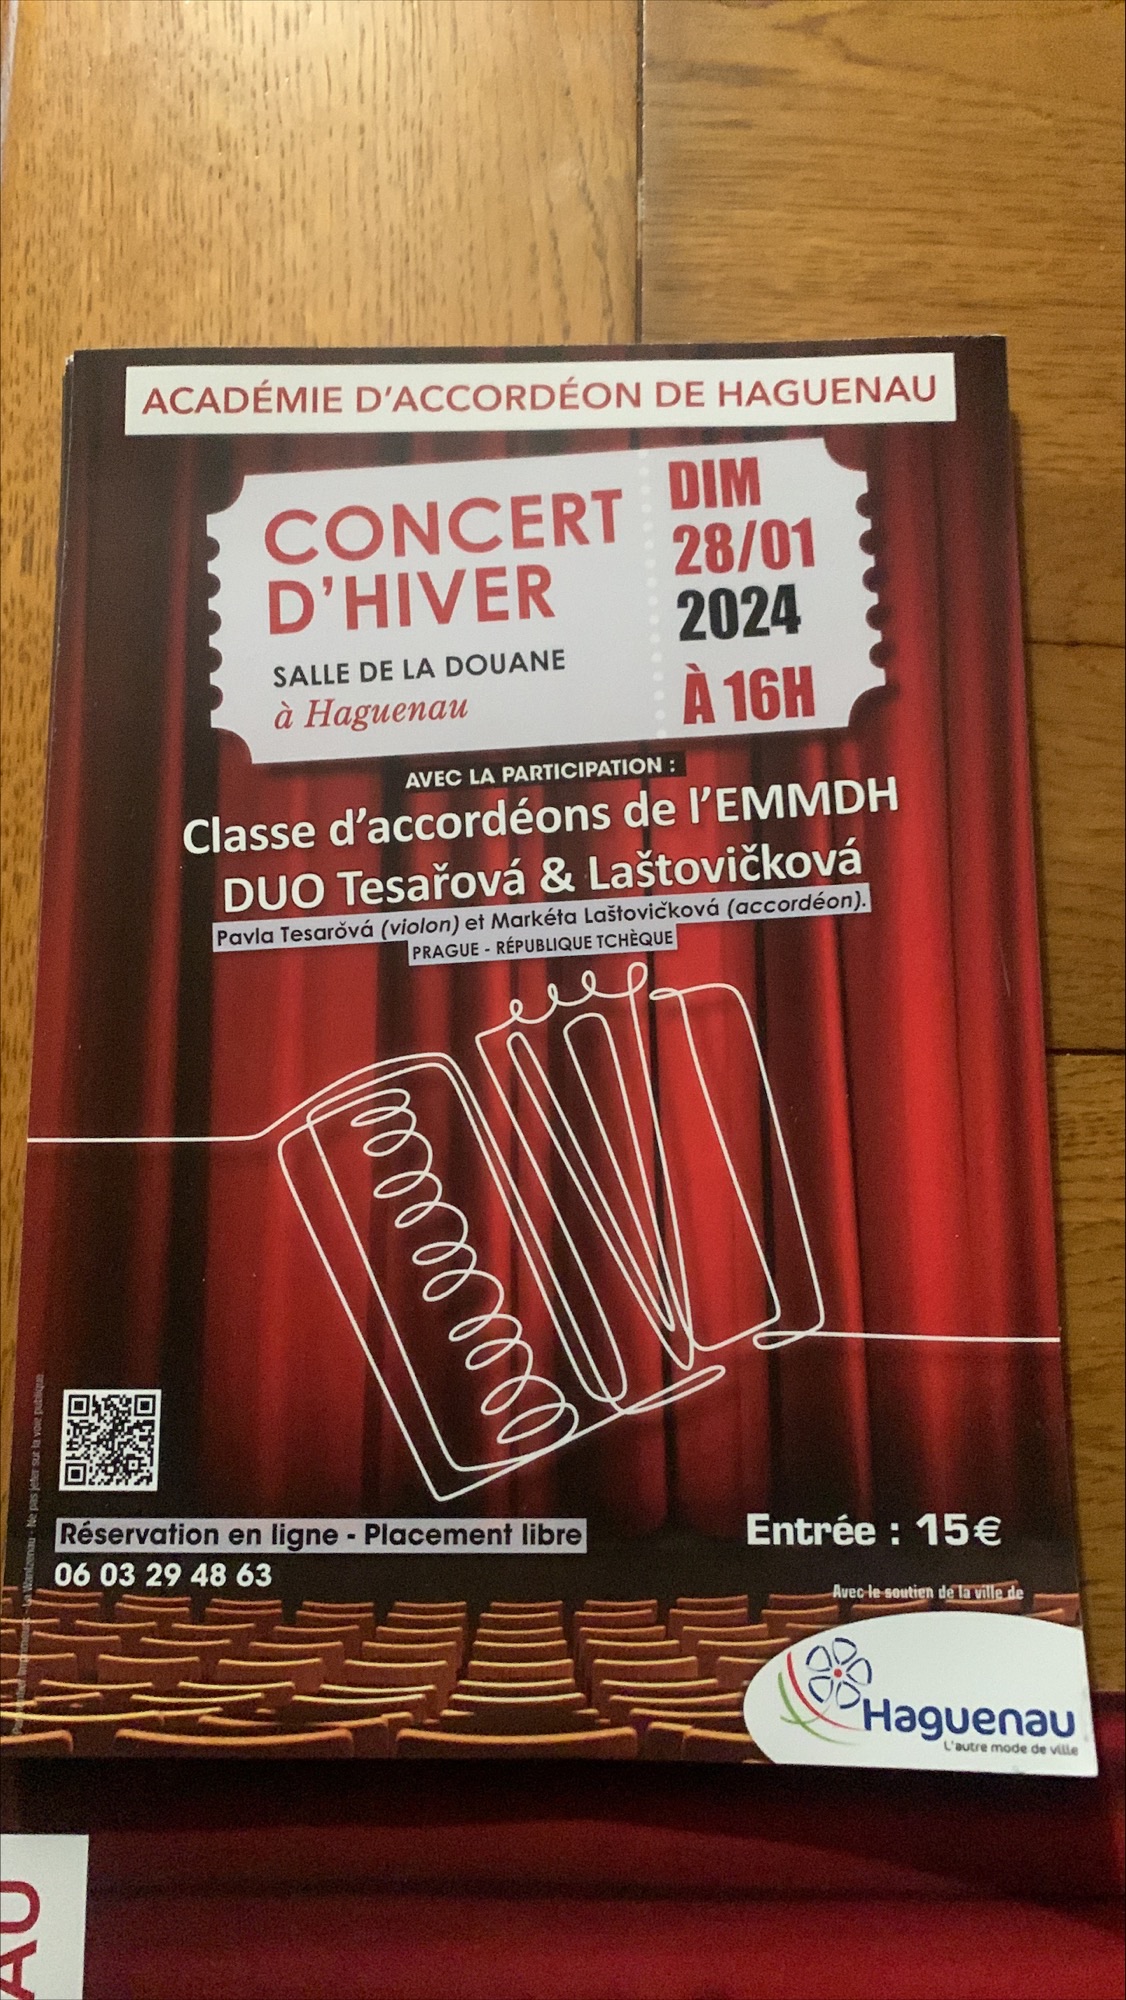 Concert d’Hiver Académie d’accordéon de Haguenau